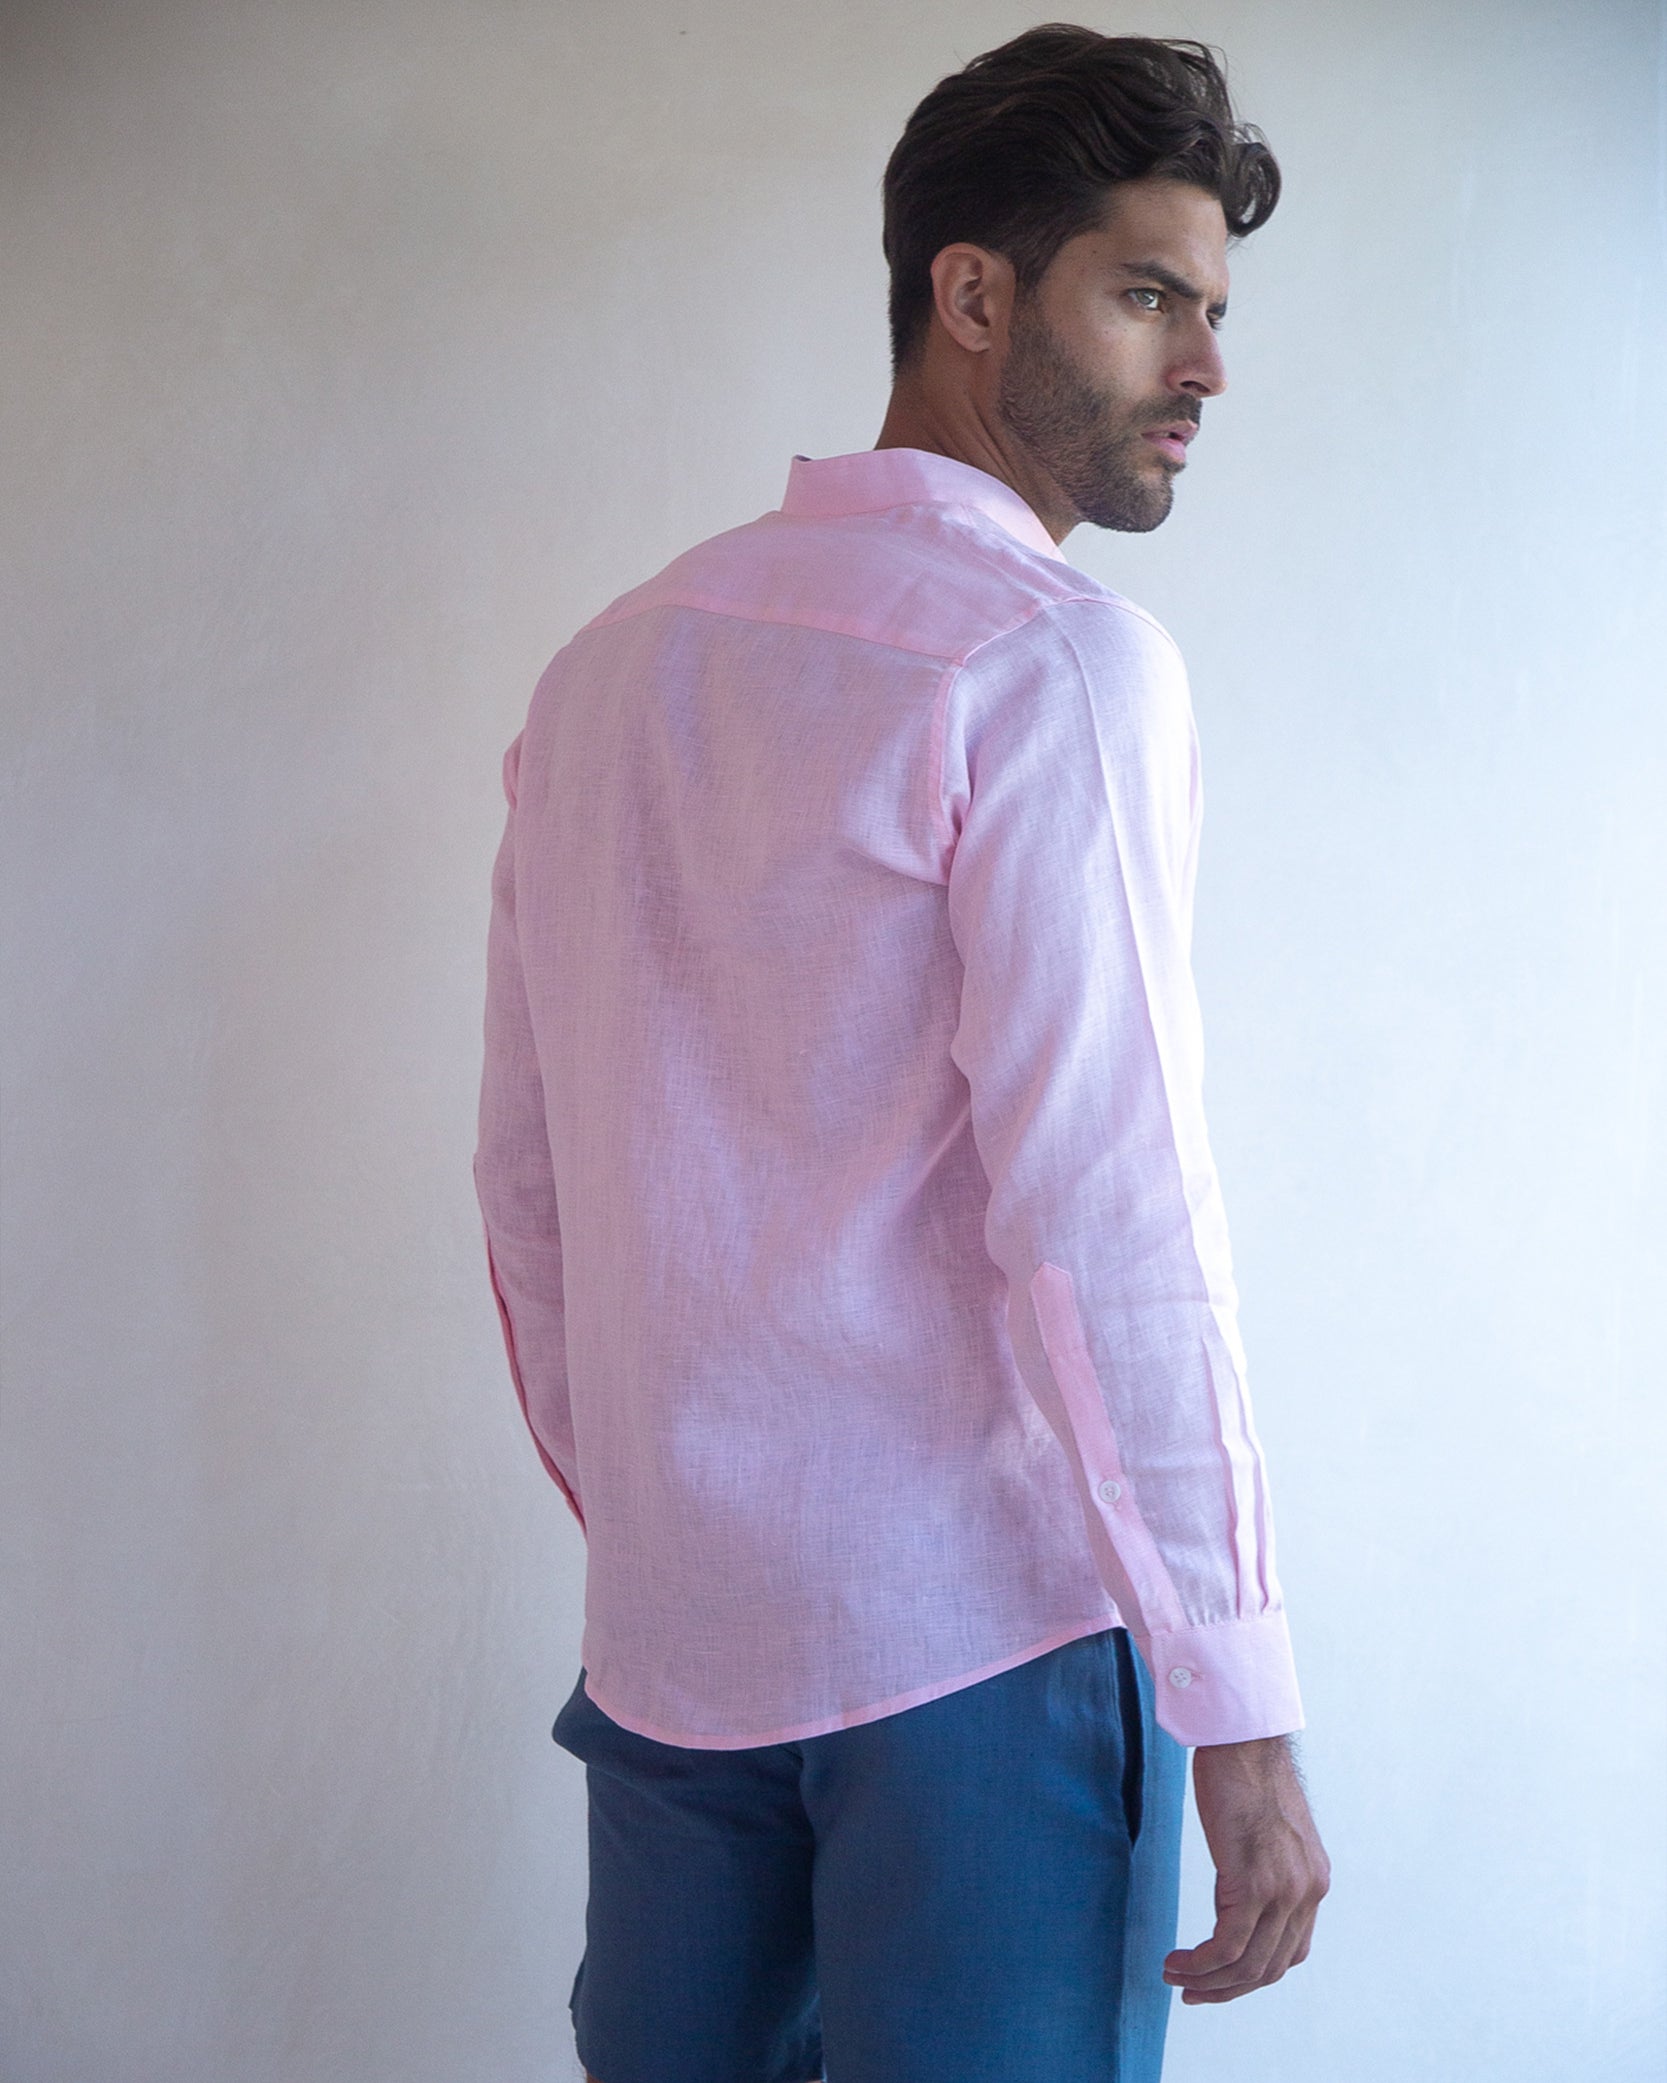 MENORCA Linen Shirt - Light Pink/Light Pink - CRASQI